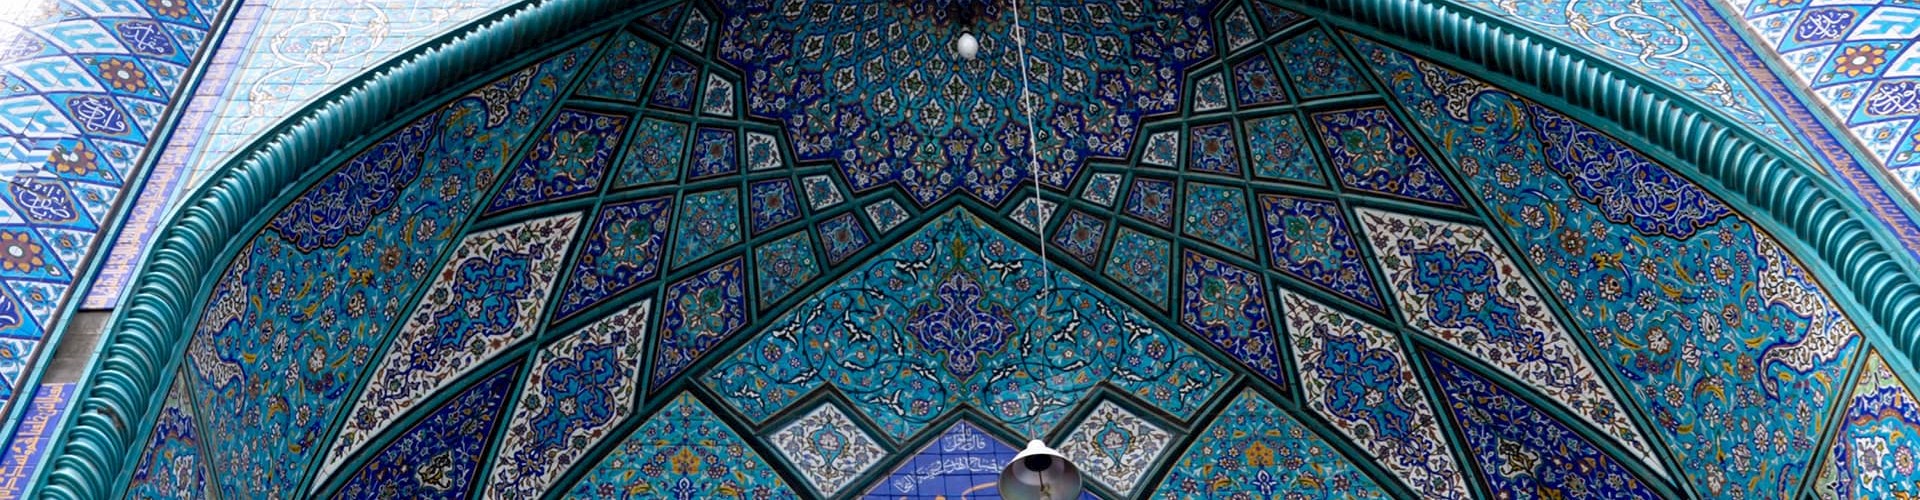 Billede af persisk moske